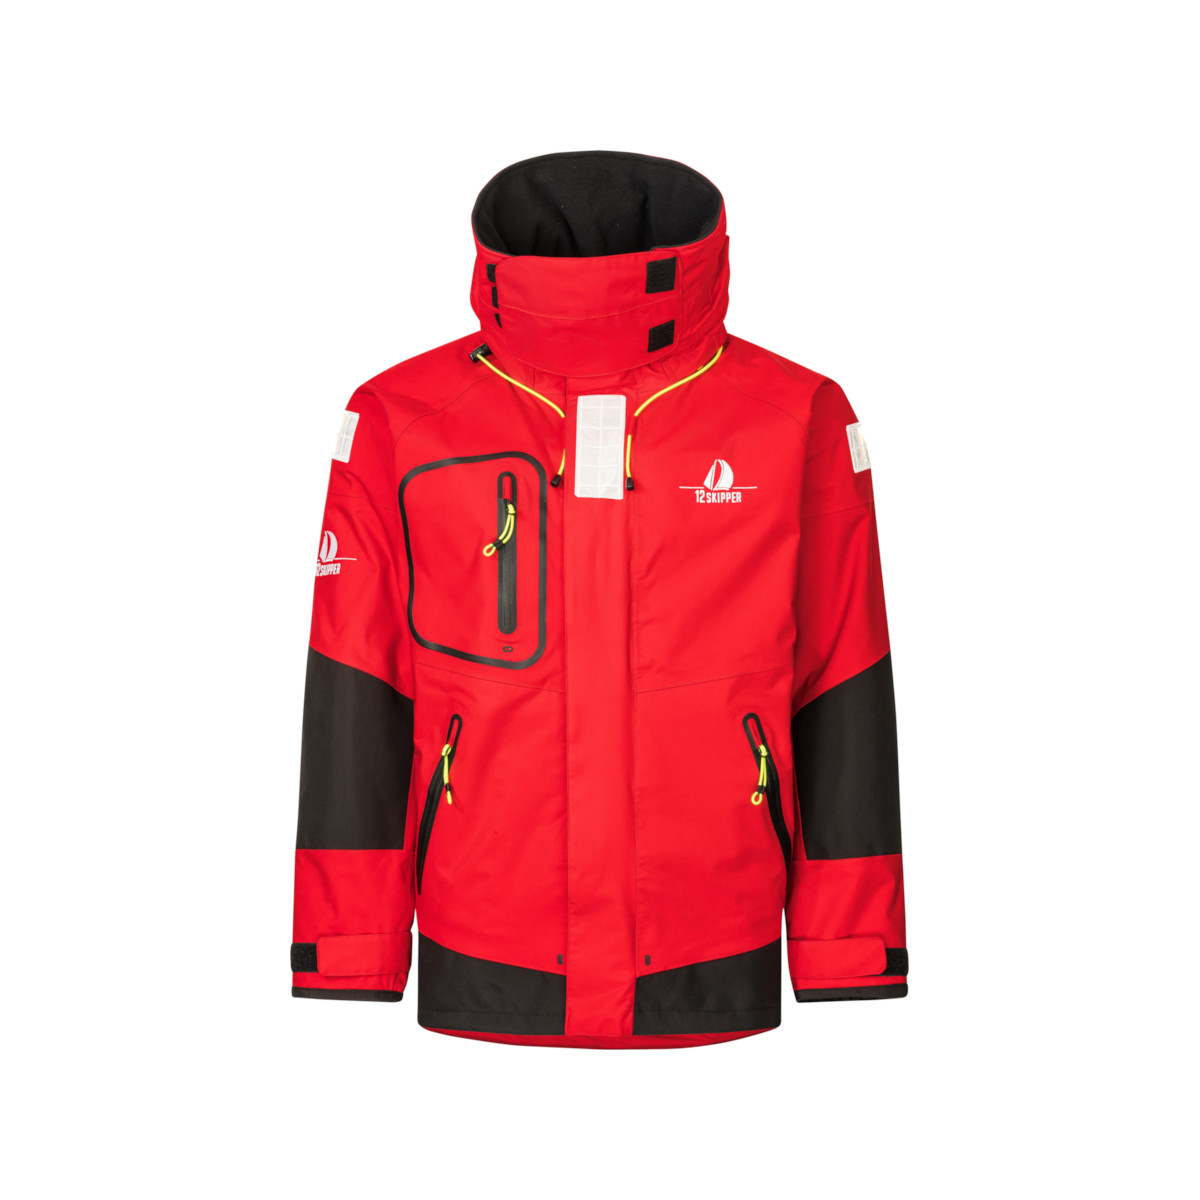 12skipper Magellan veste de quart hauturière, unisexe - rouge, taille XXL